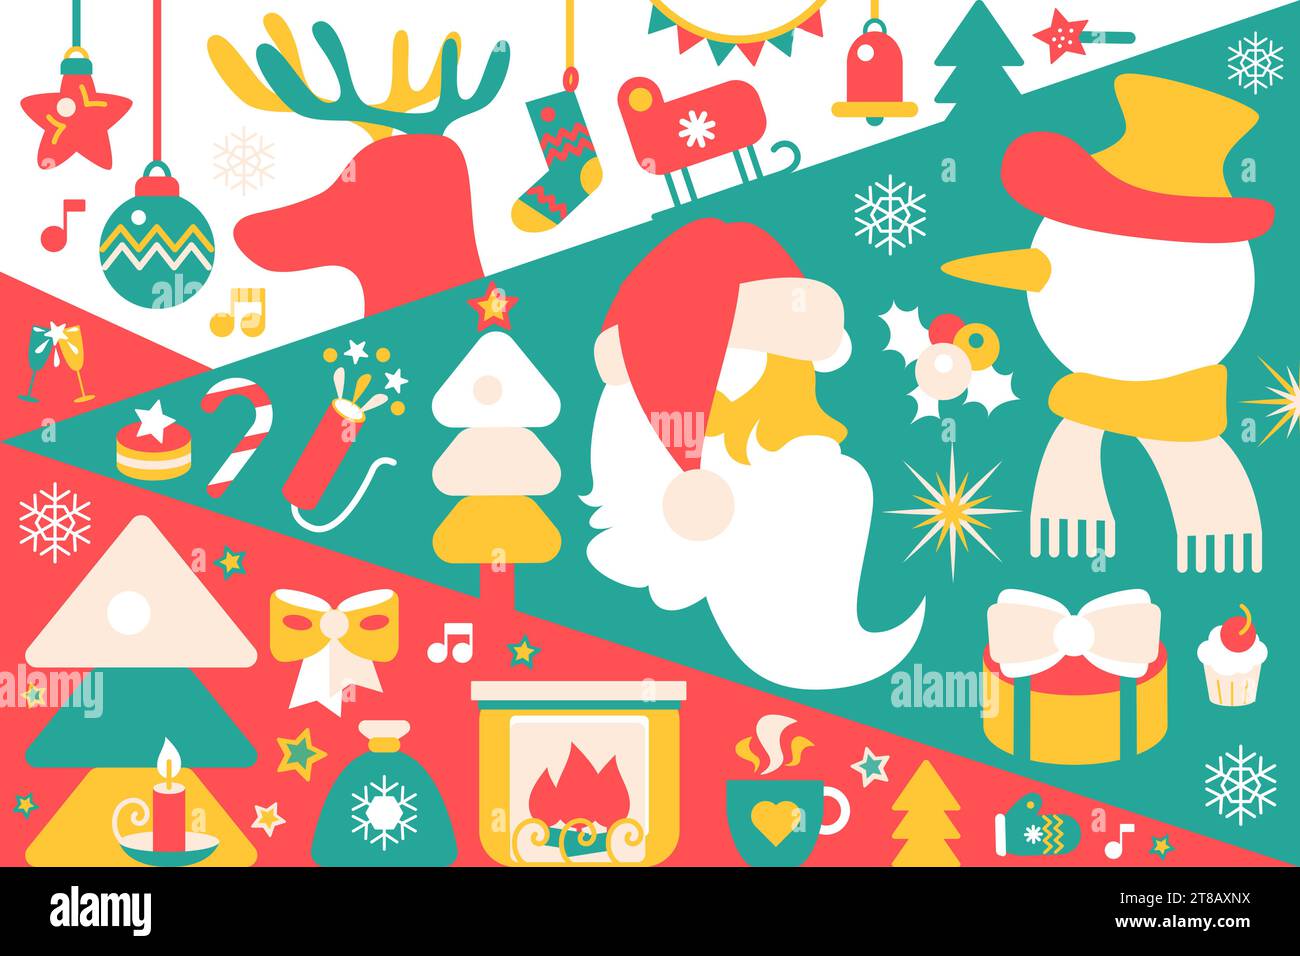 Weihnachtliches horizontales Partyplakat in Rot-Grün-Farben mit Weihnachtsbaumspielzeug, Feuerwerkskörper, Weihnachtsmann, Schneemann, Hirsch, Geschenke, Überraschungen. Te Stock Vektor